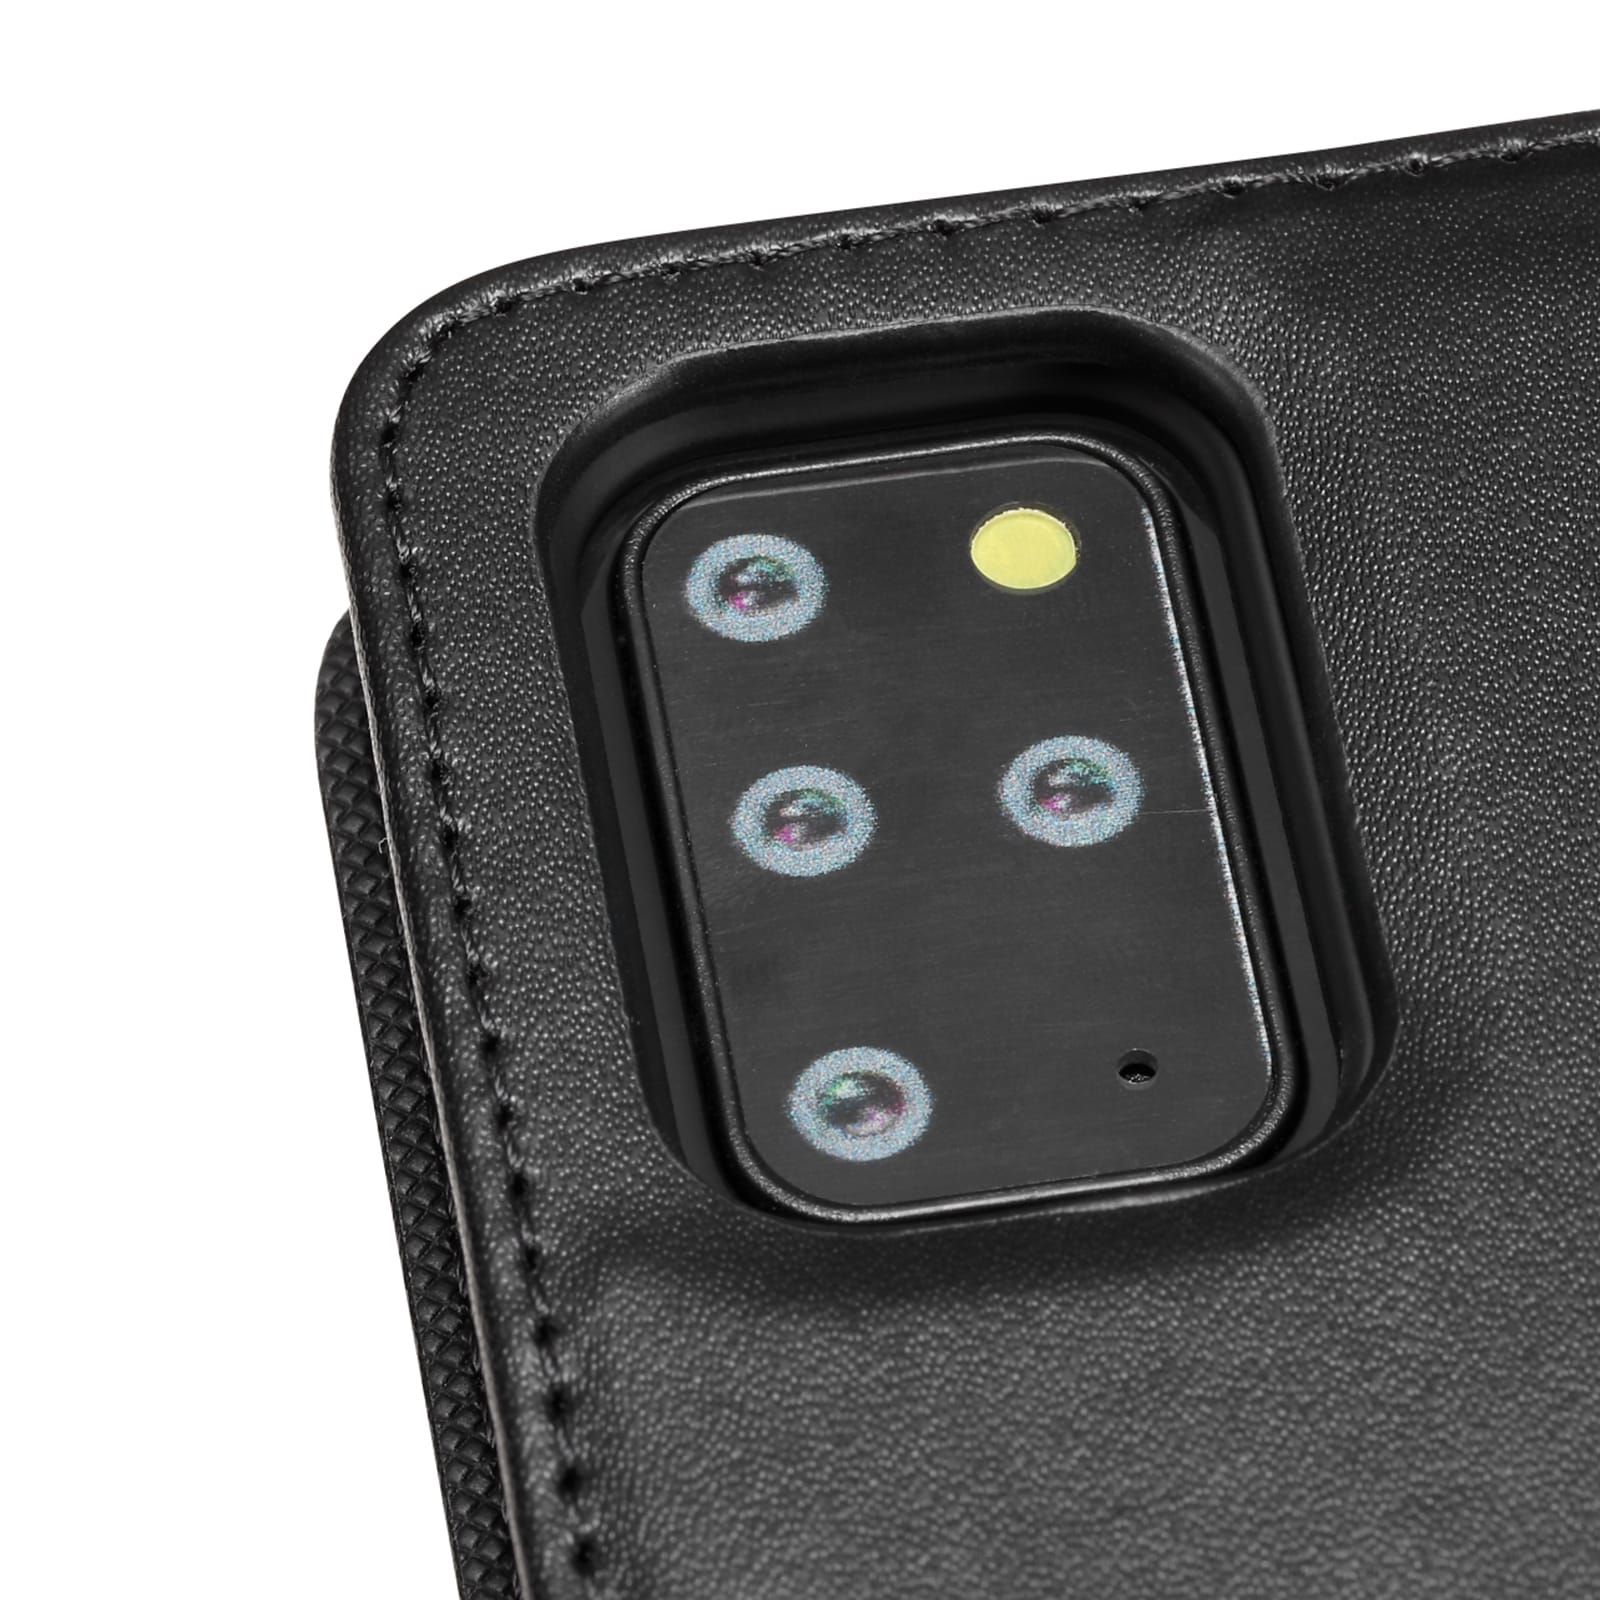 Wallet Case Magnet til Galaxy S20+